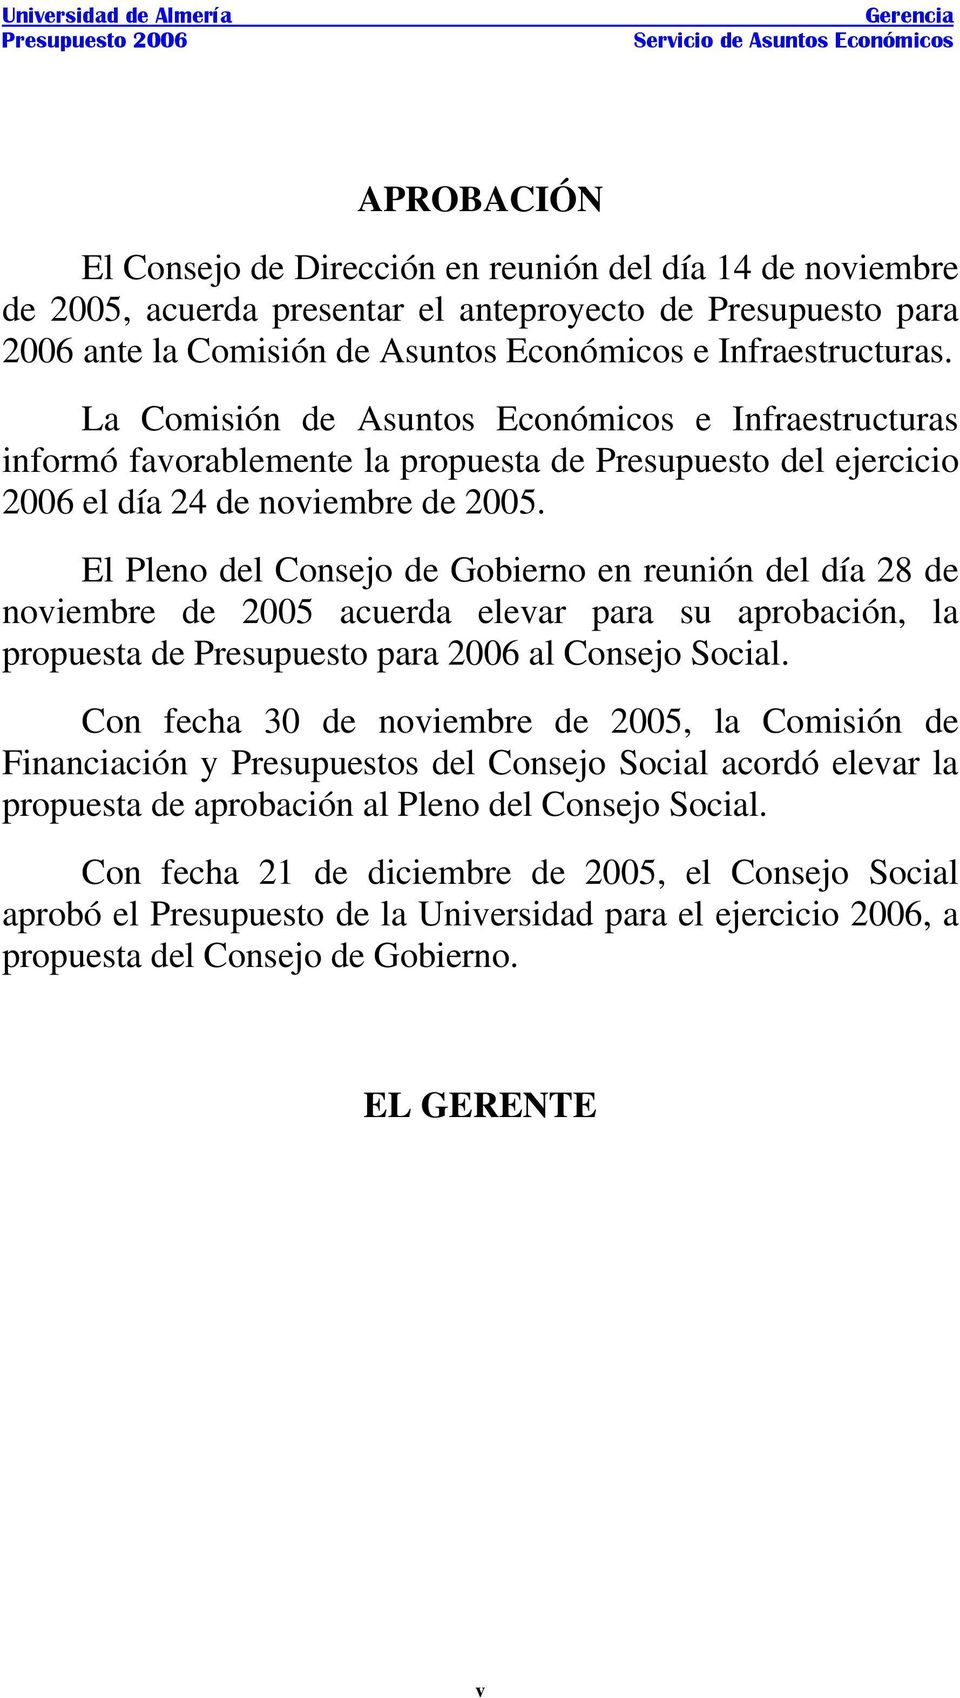 La Comisión de Asuntos Económicos e Infraestructuras informó favorablemente la propuesta de Presupuesto del ejercicio 2006 el día 24 de noviembre de 2005.